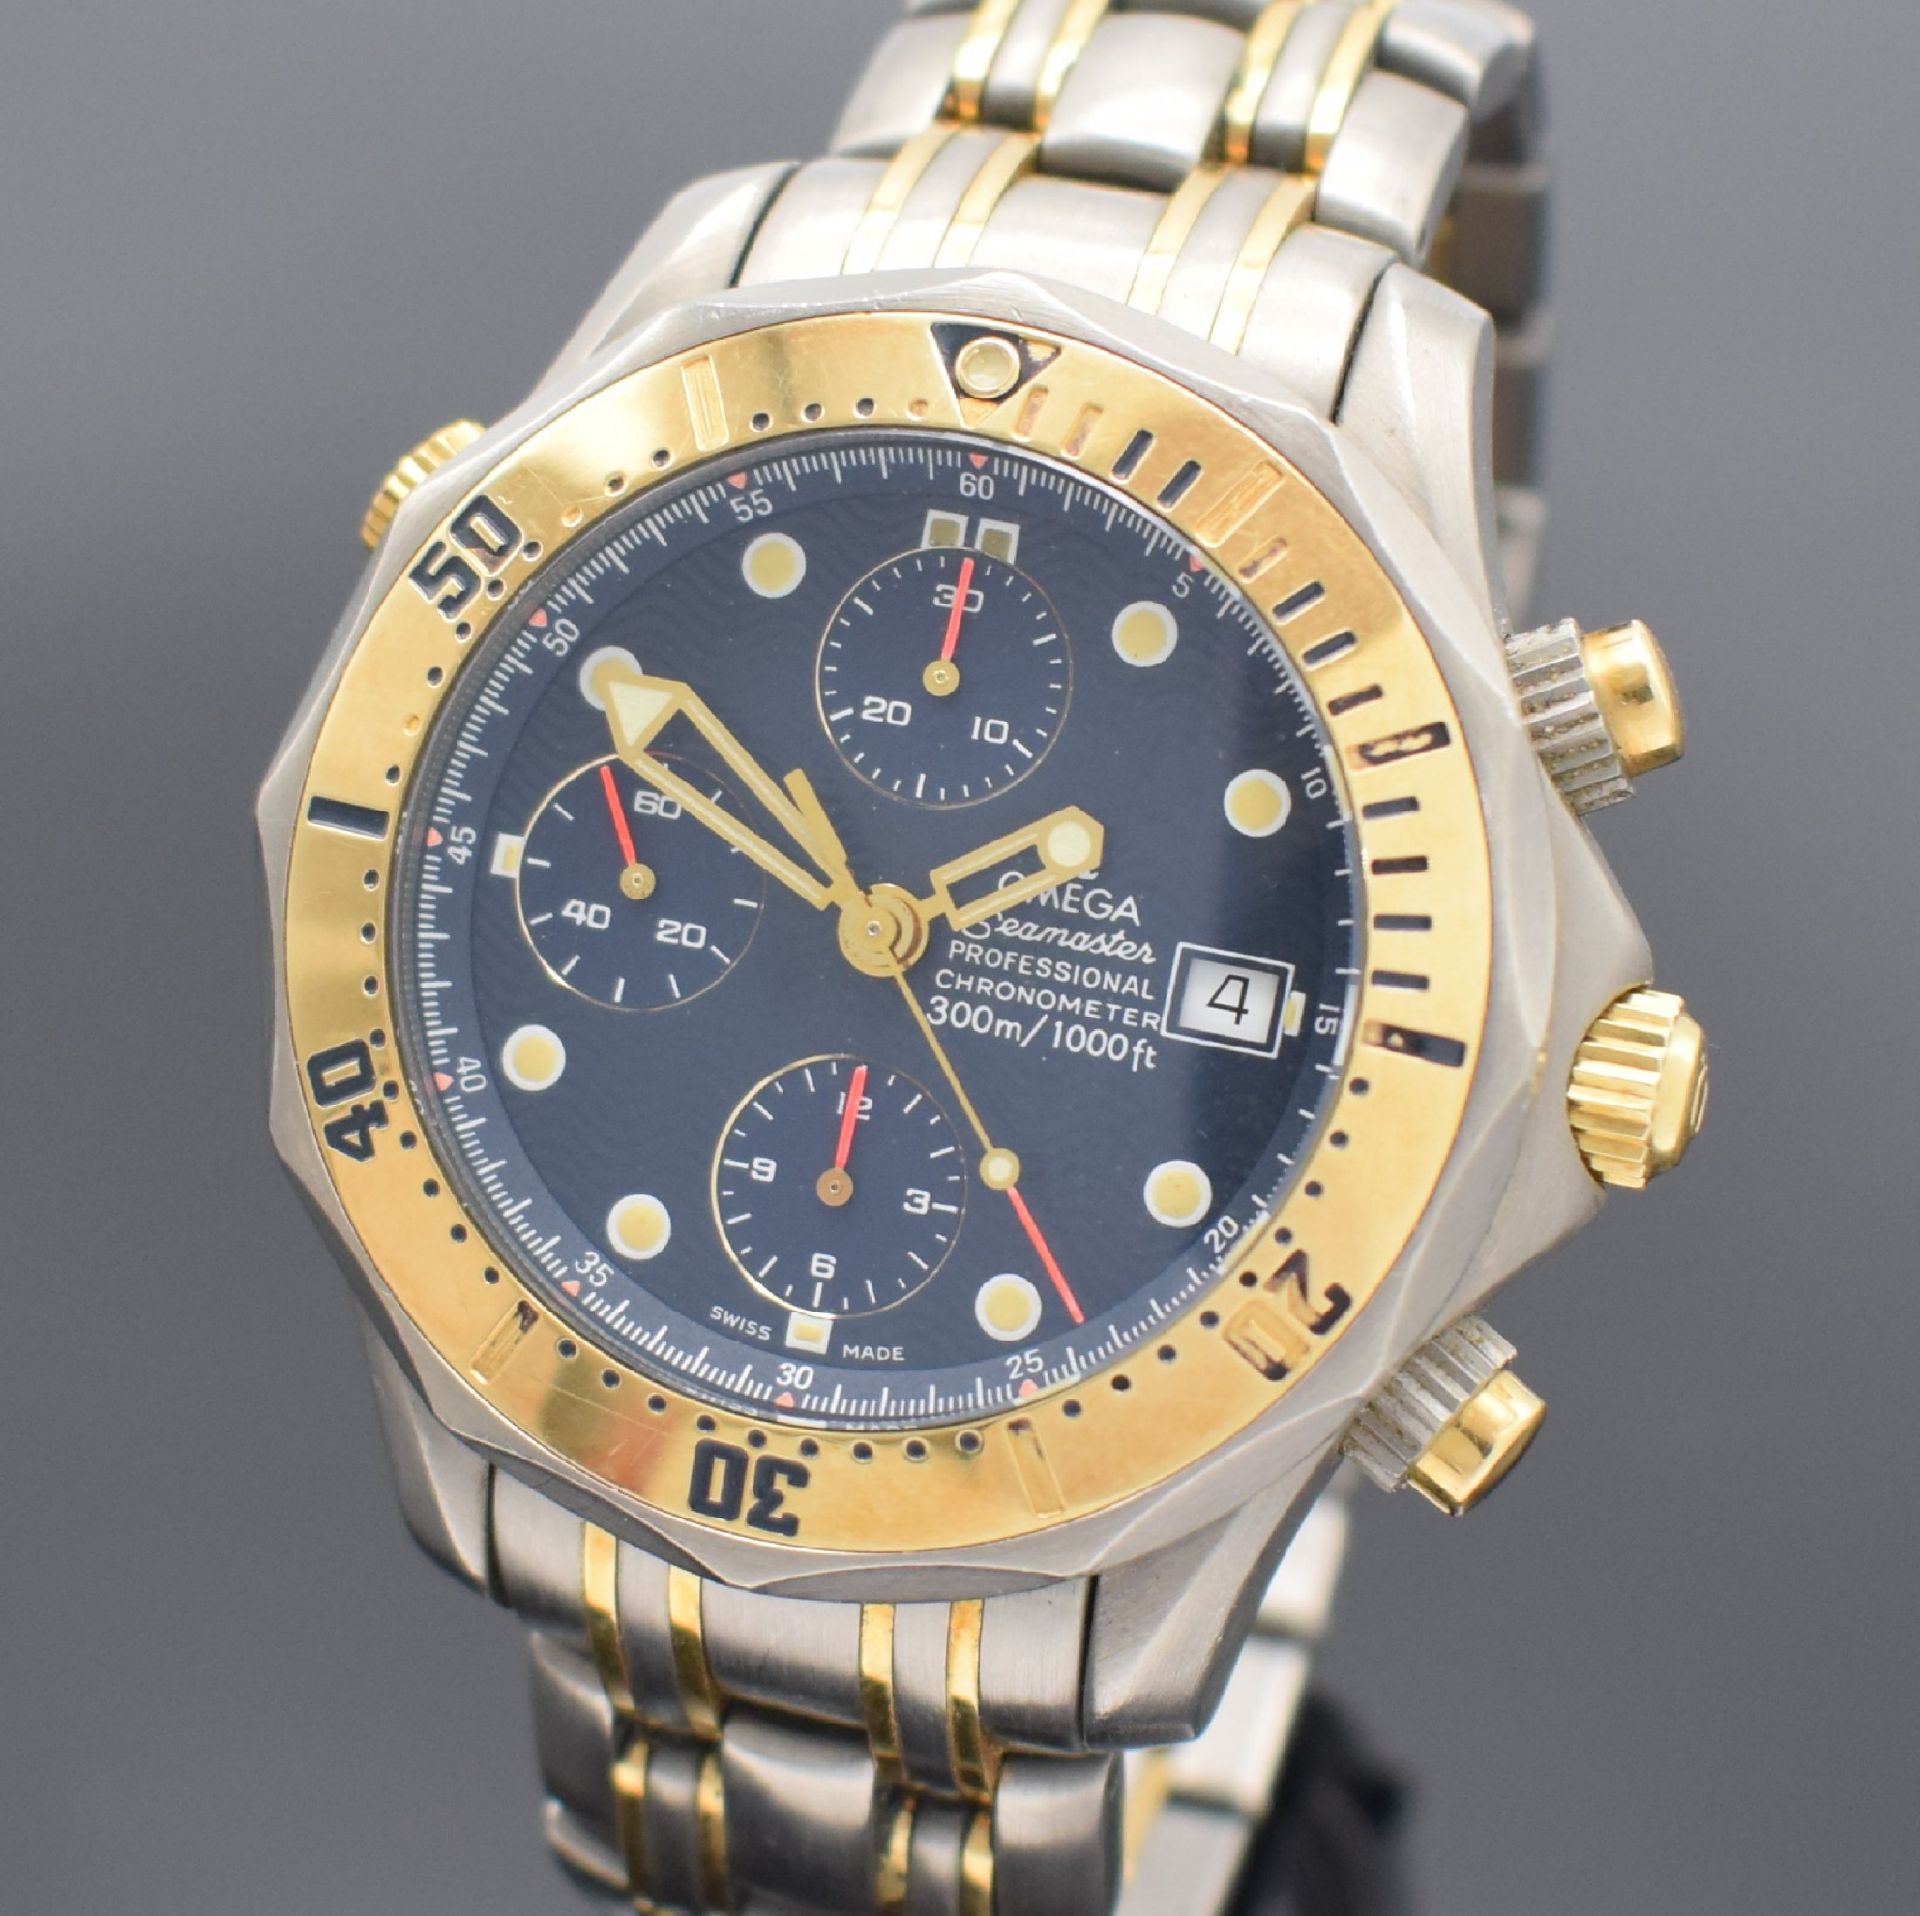 OMEGA Seamaster Professional Chronometer - Image 2 of 5